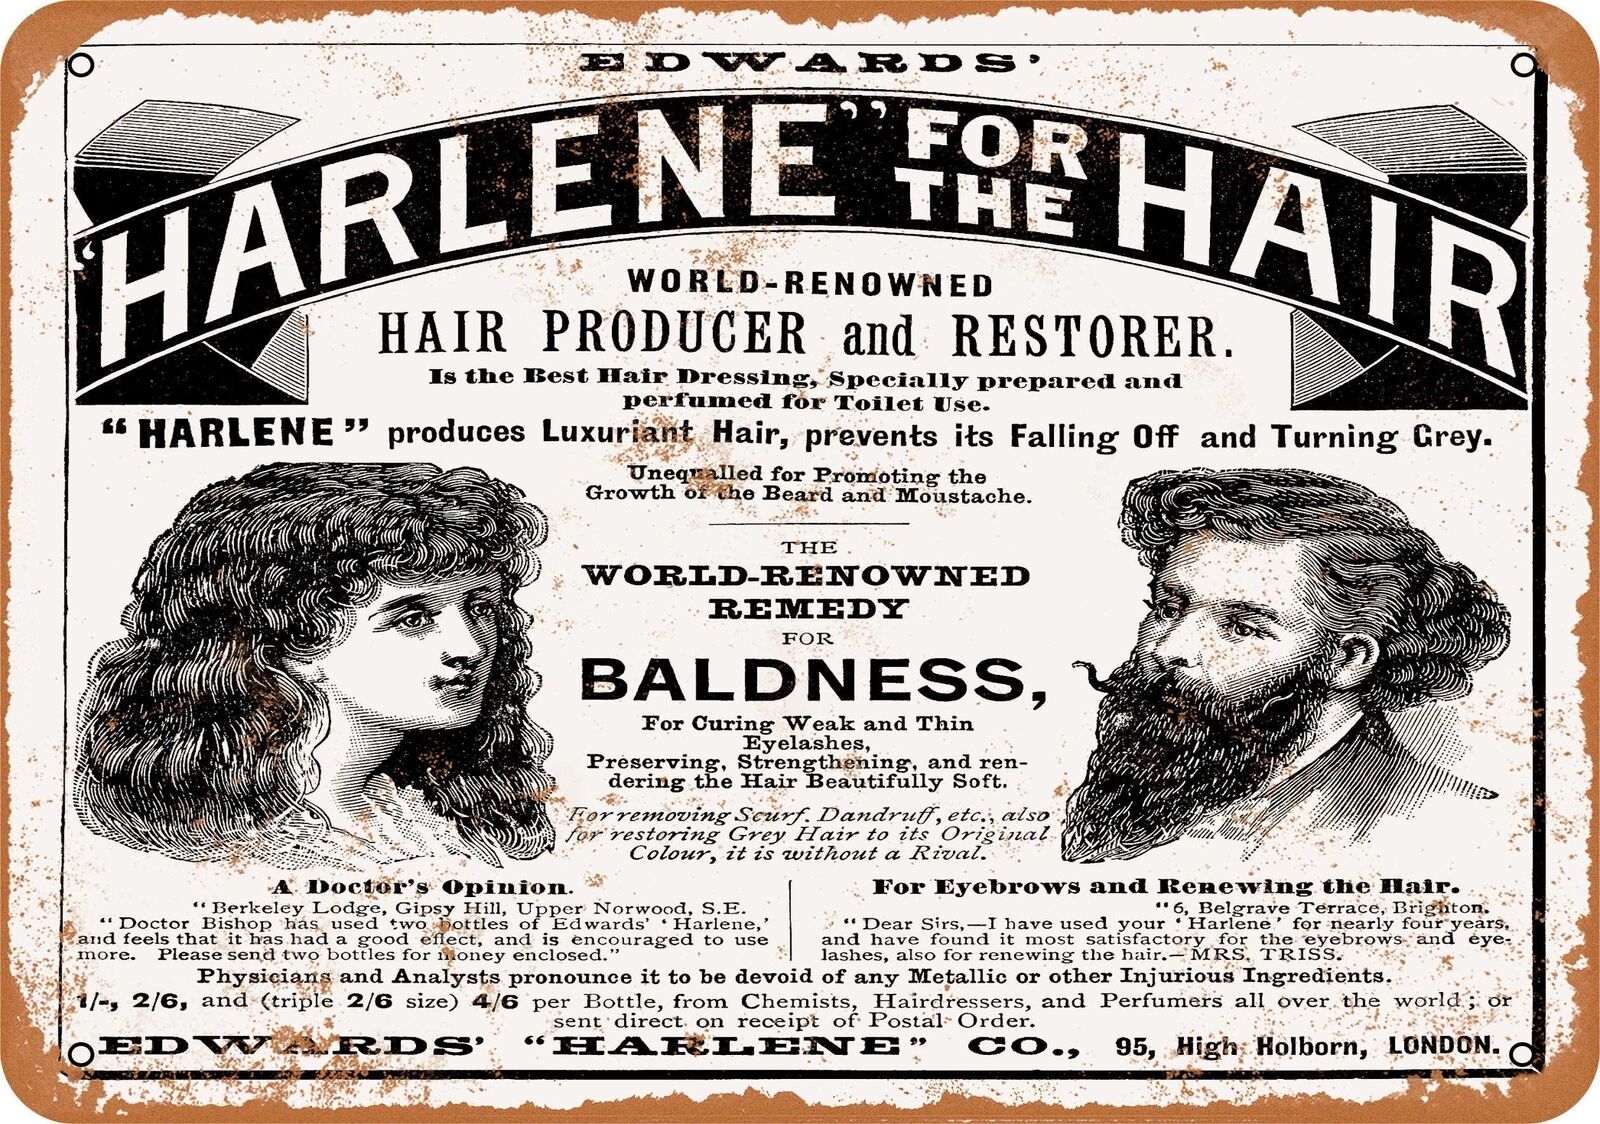 Metal Sign - 1895 Harlene Hair Producer and Restorer -- Vintage Look